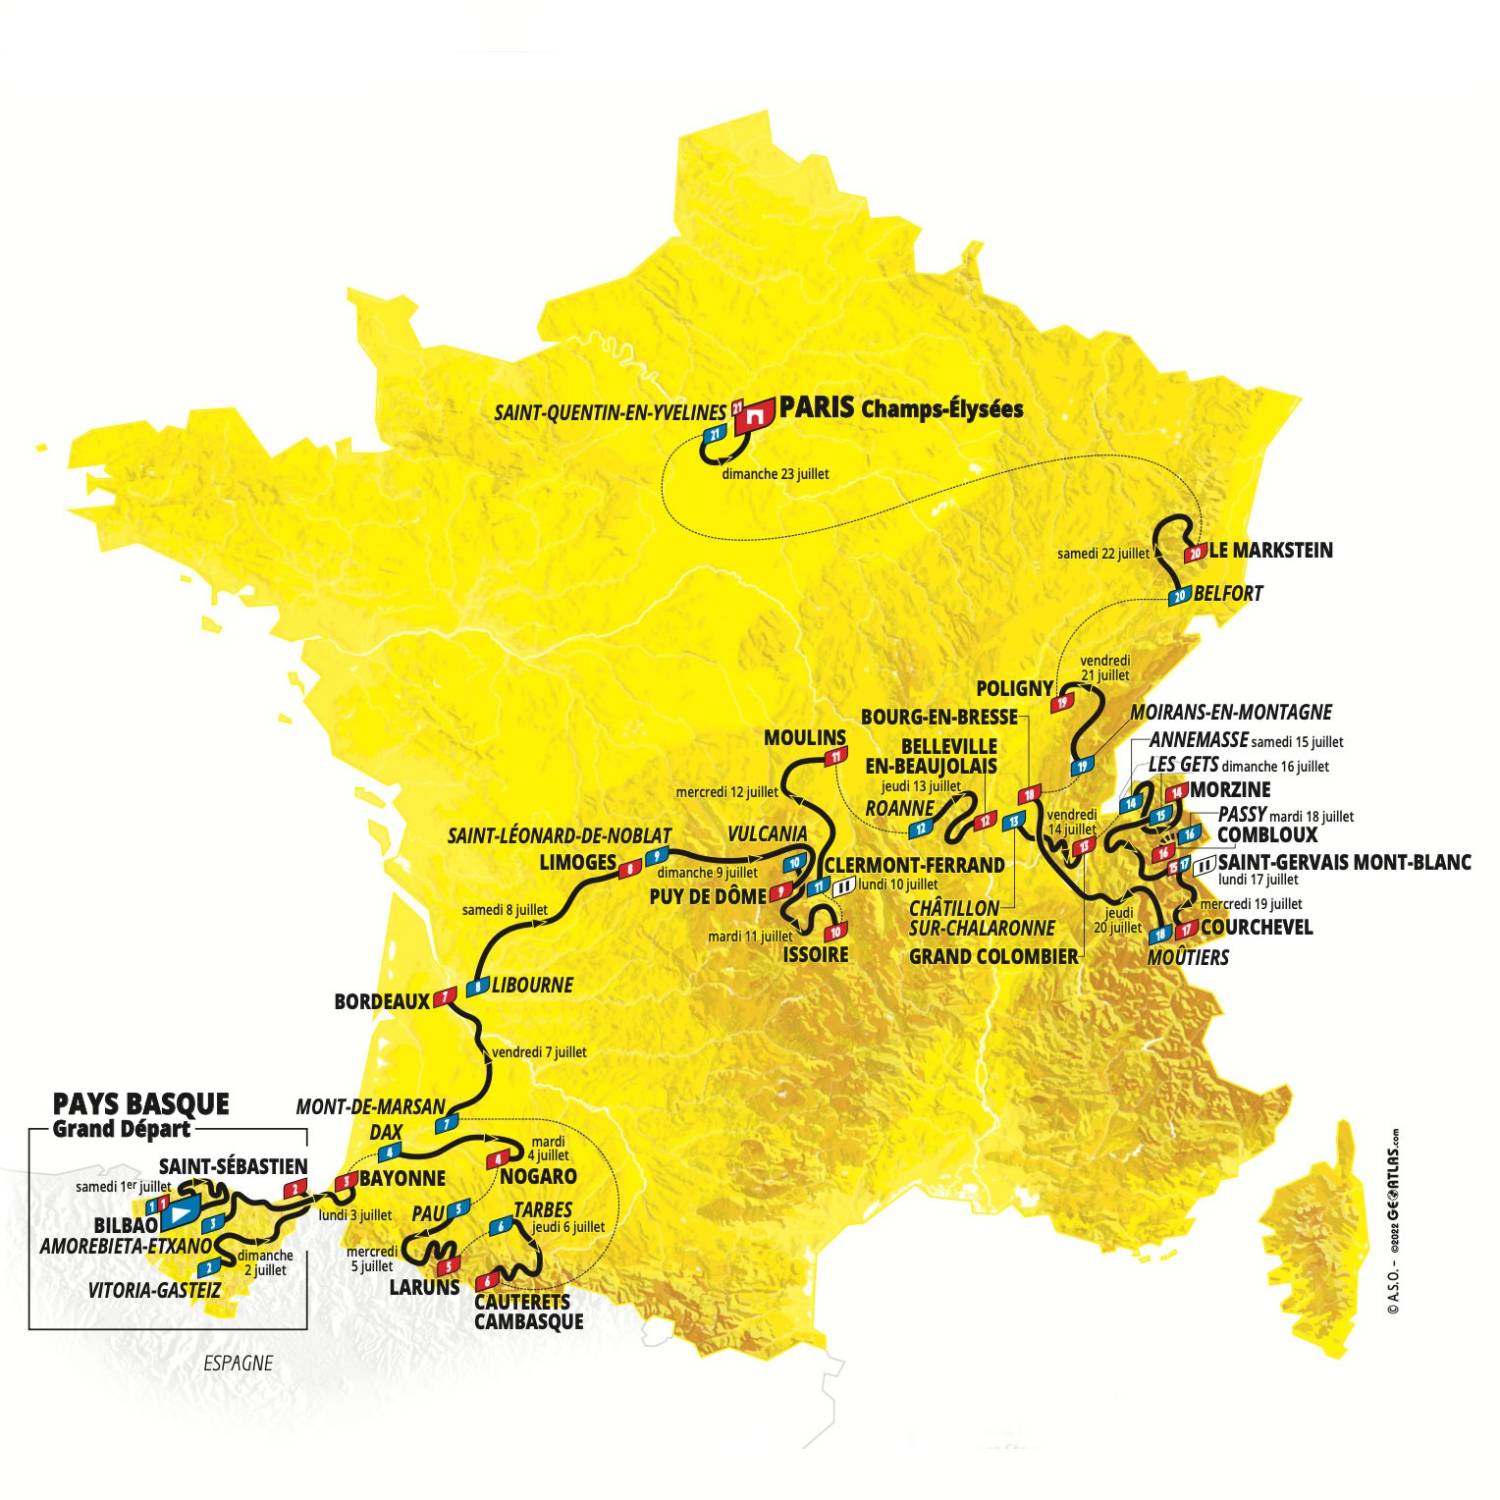 Tour de France Route Map